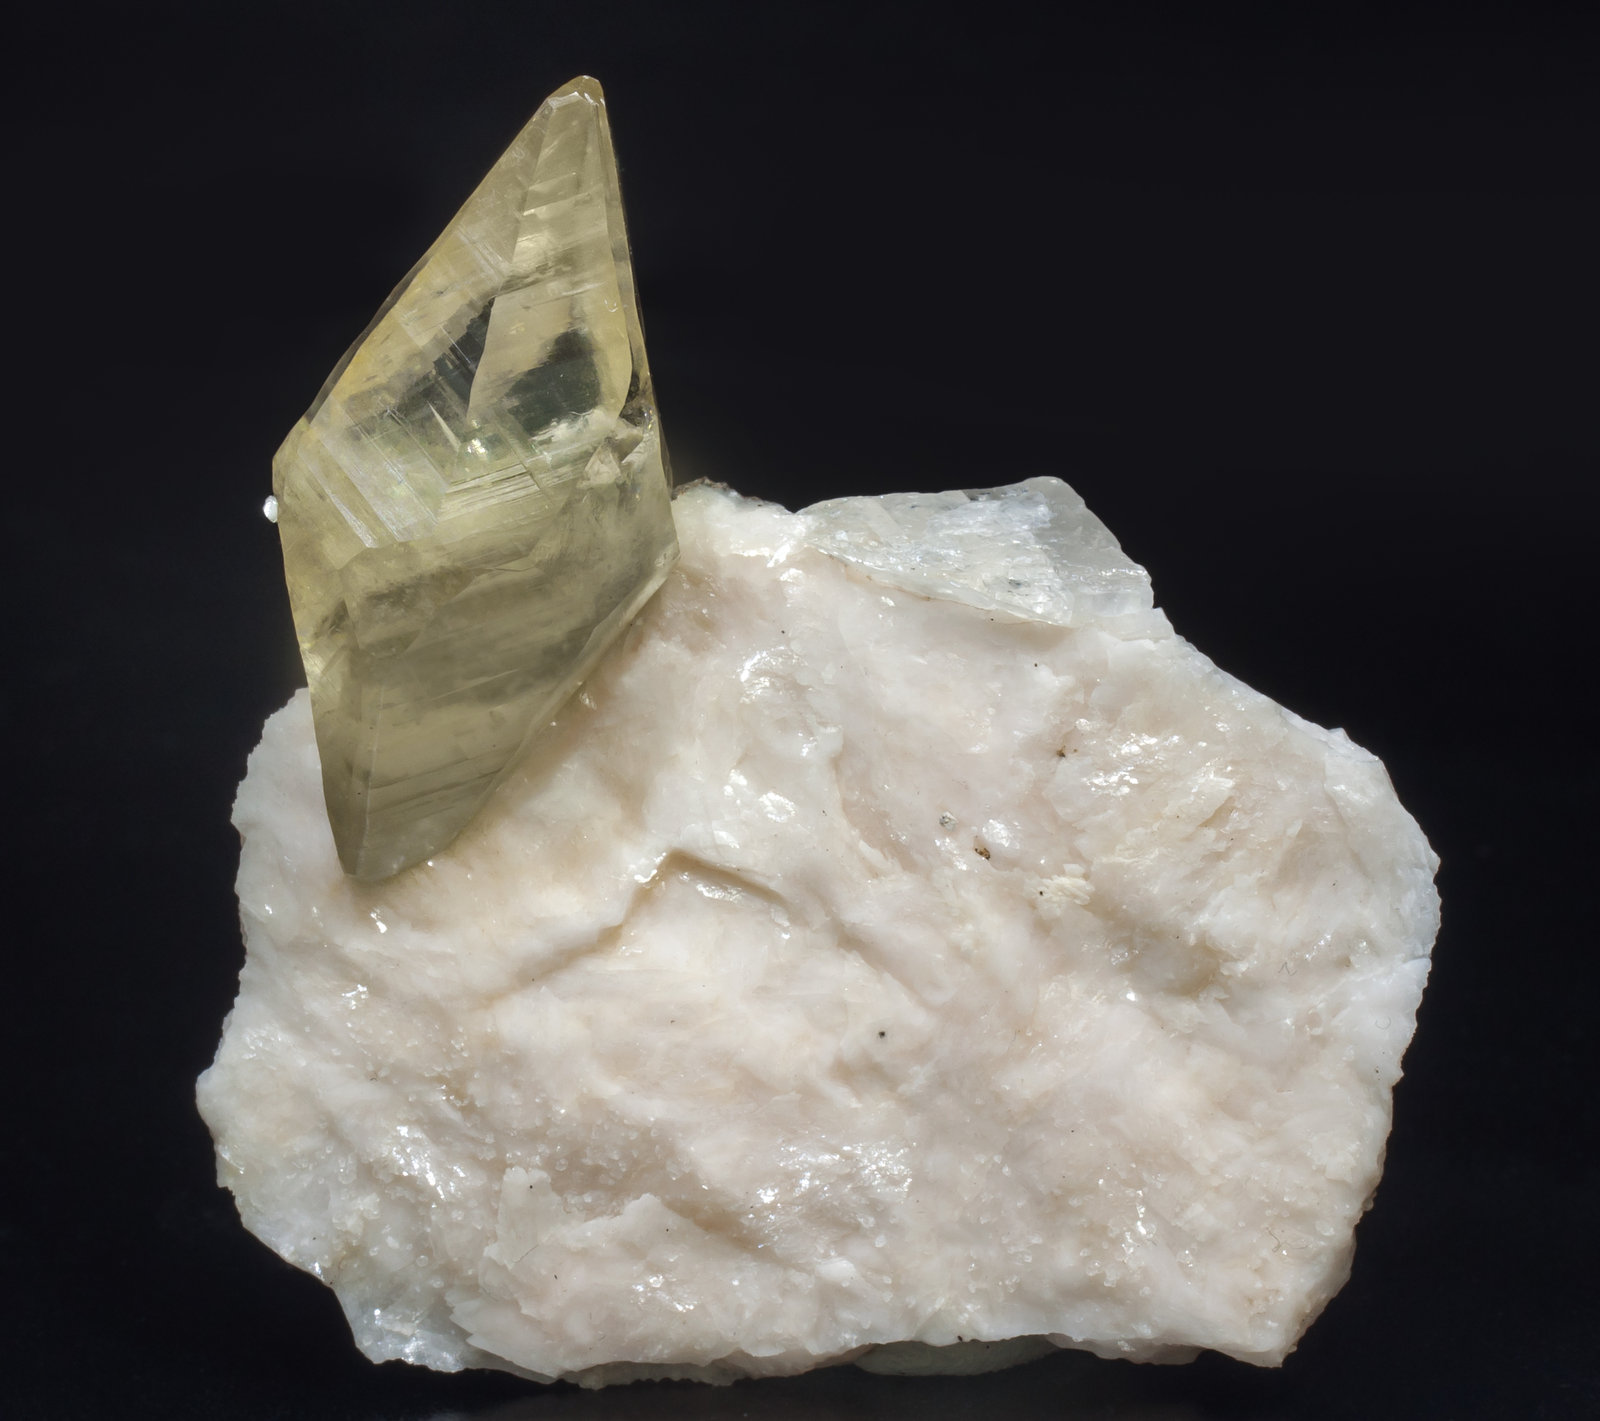 specimens/s_imagesAD2/Calcite-NK63AD2f.jpg